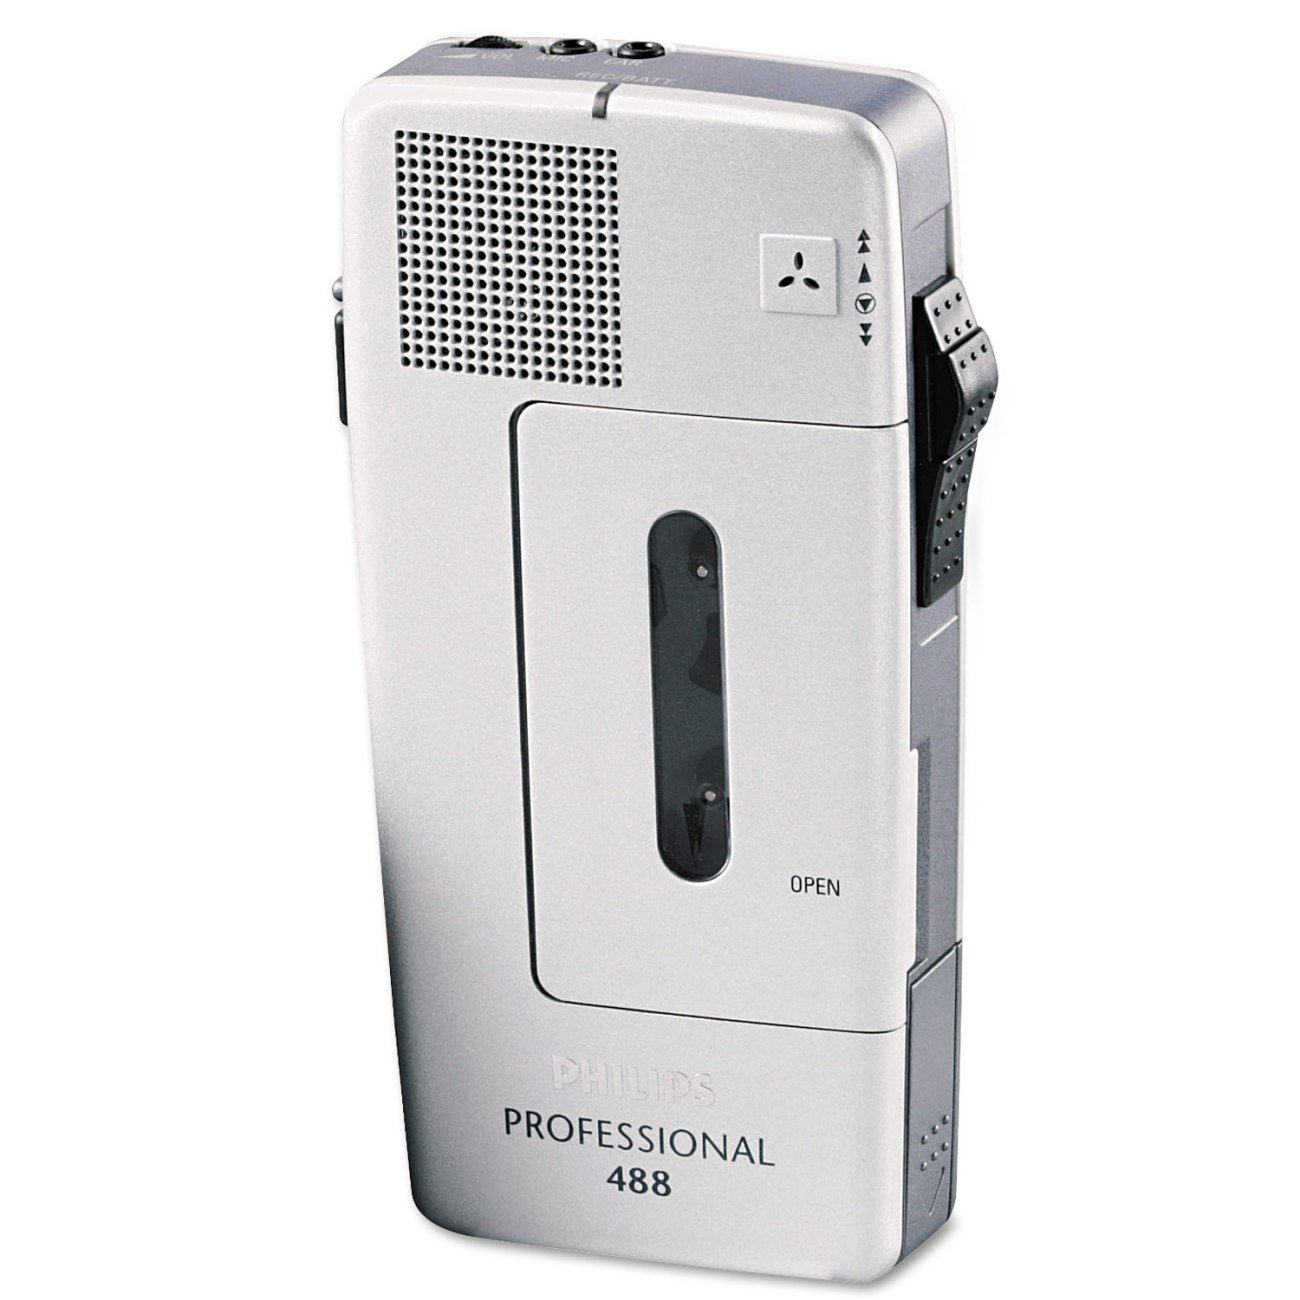 Philips Pocket Memo LFH0488 Analoges Mini-Kassetten Diktiergerät (Schiebeschalter, wählbare Mikrofonempfindlichkeit, autom. Aufnahmeaussteuerung, Sprachaktivierung, Briefende-Ton) Silber